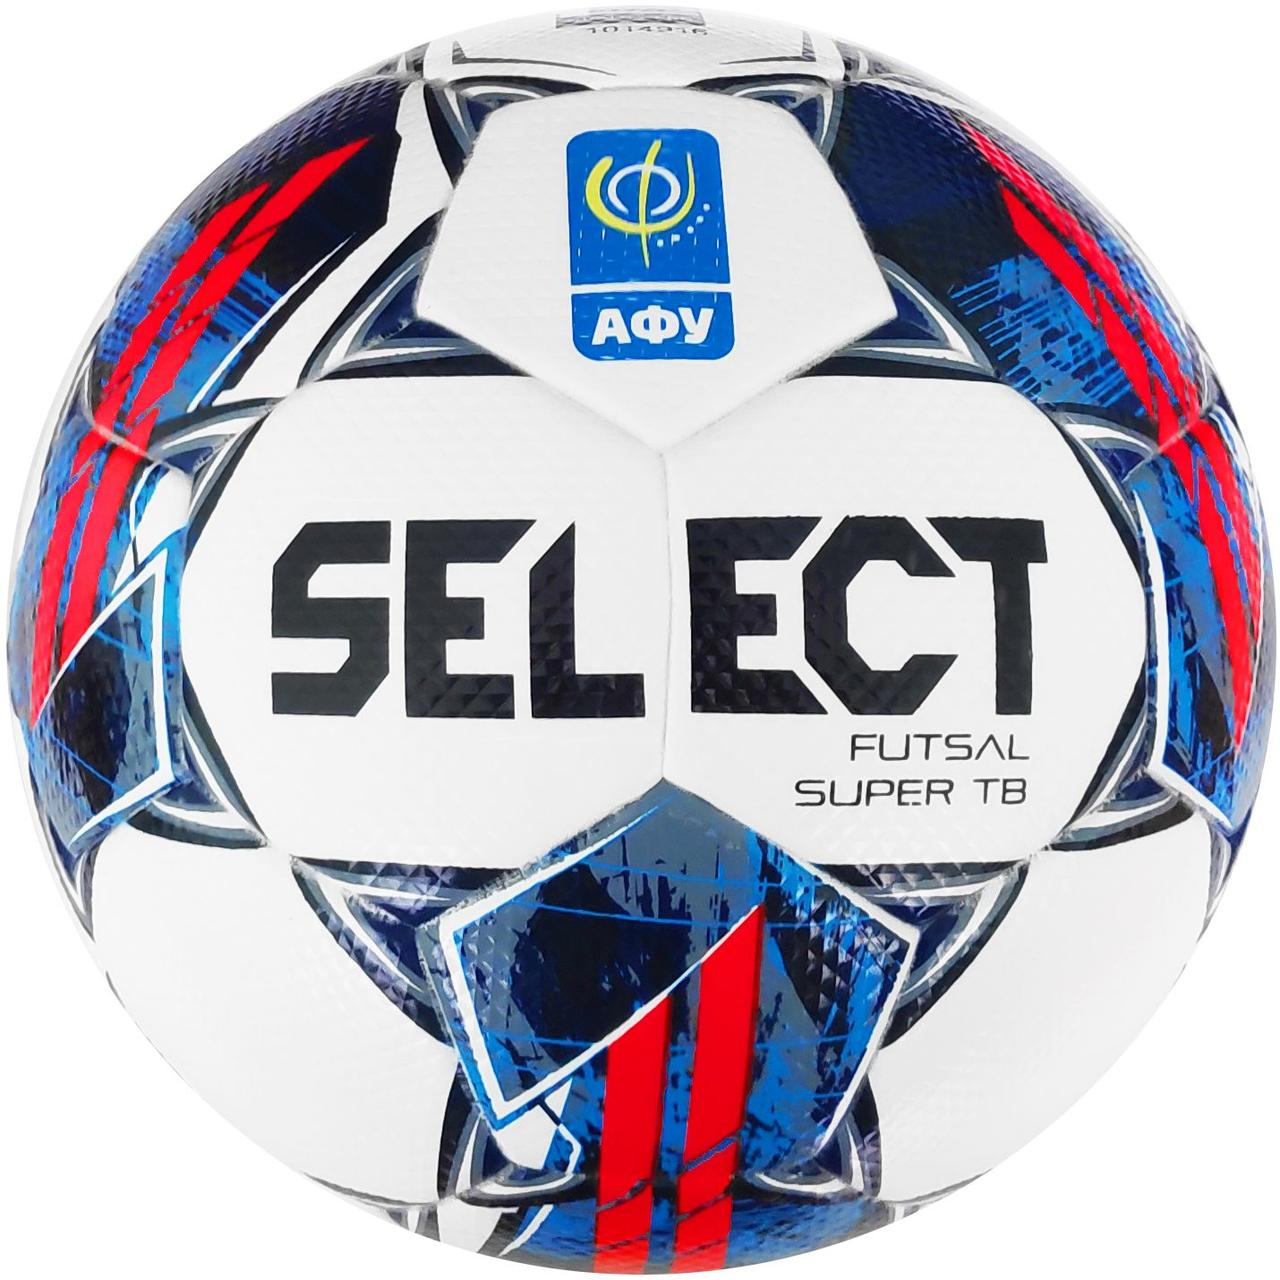 М'яч футзальний Select FUTSAL SUPER TB  v22 АФУ біло-чевоний, синій Уні 4